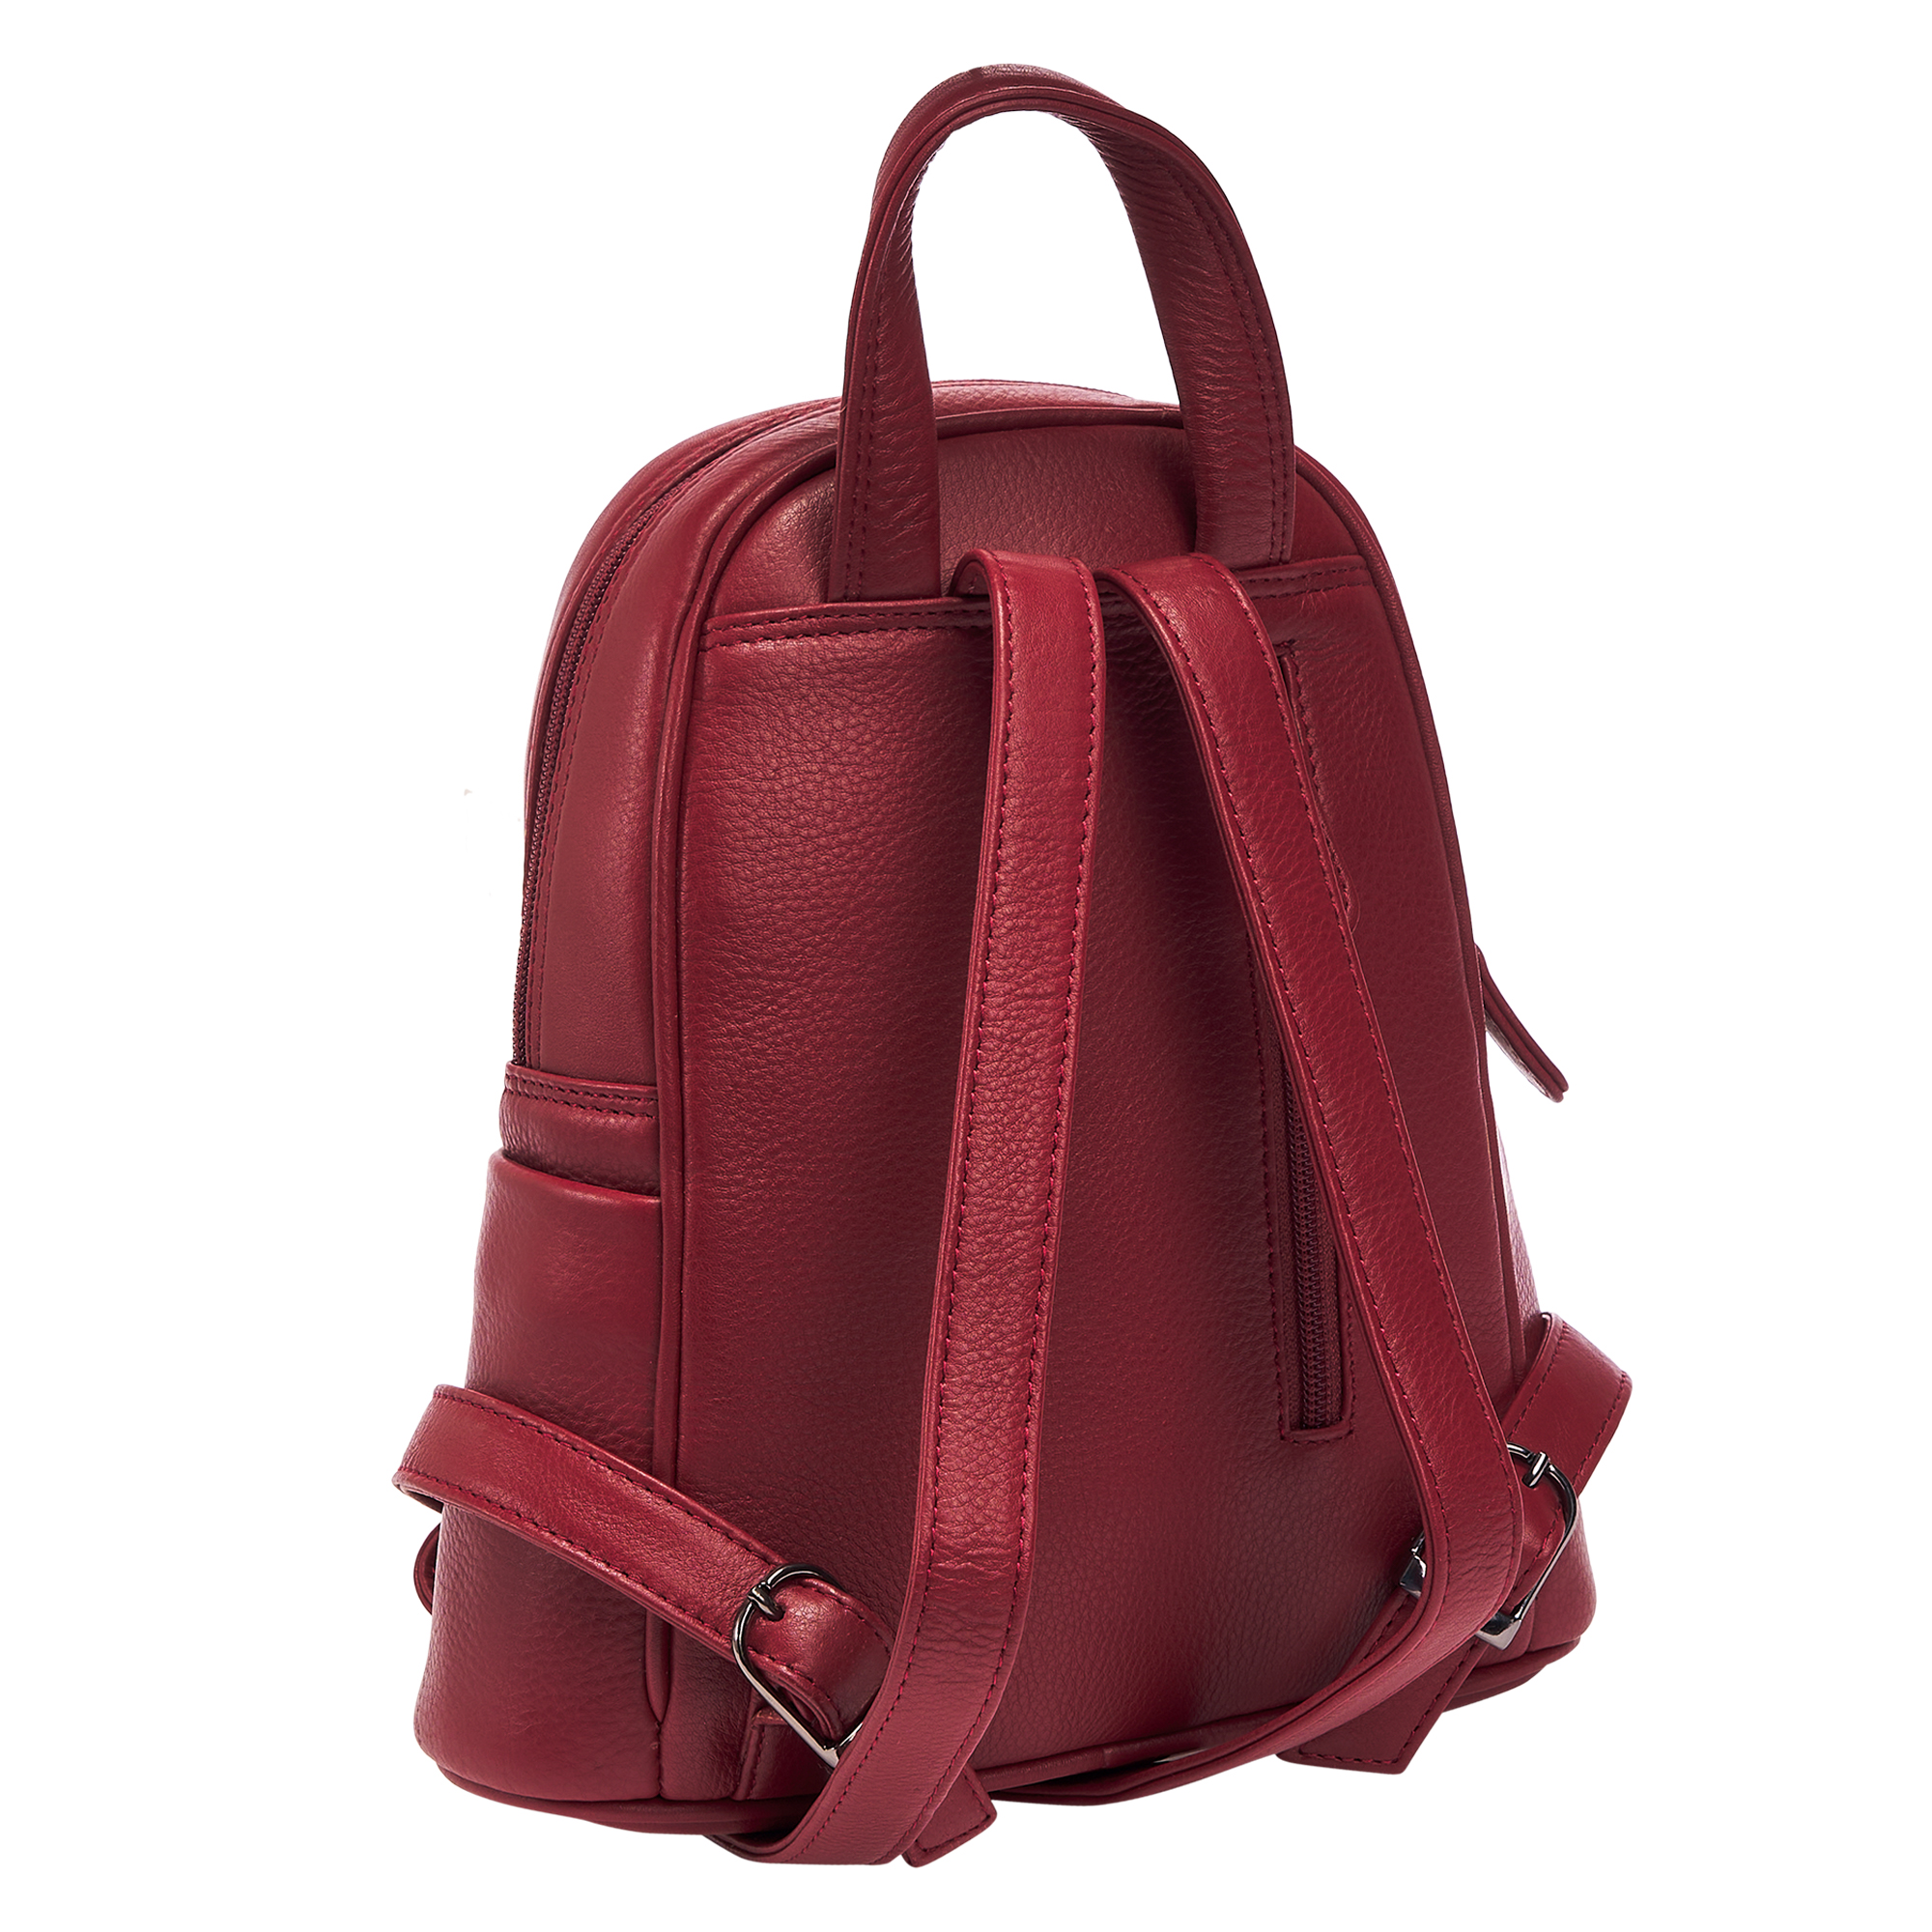 Др.Коффер W620116-41-03 рюкзак, цвет красный - фото 7